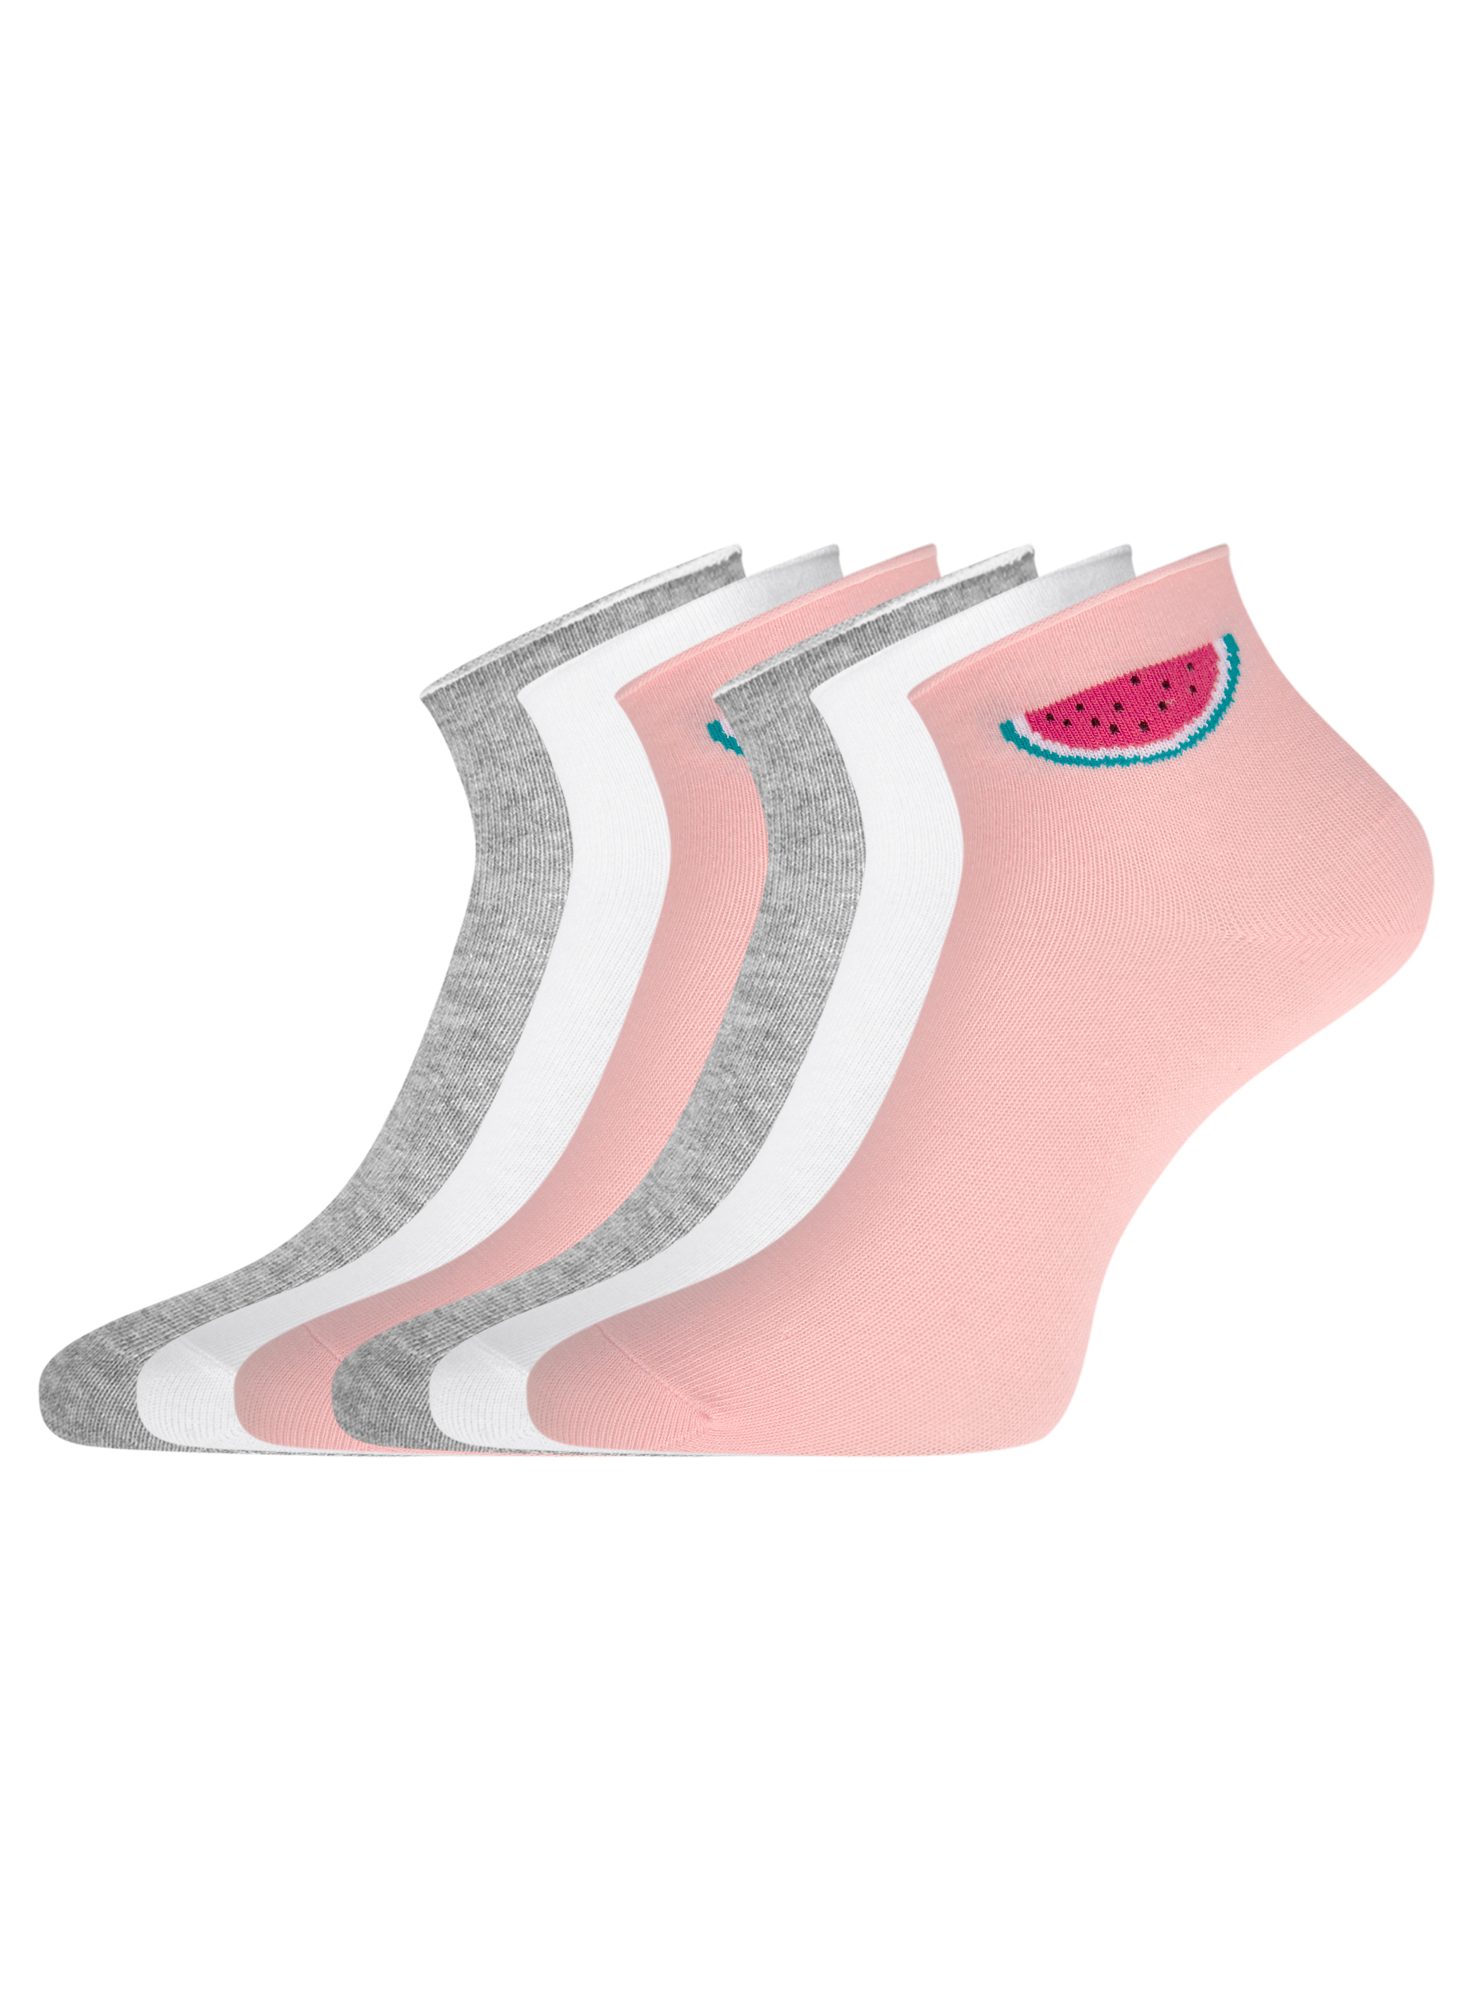 Комплект носков женских oodji 57102705T6 разноцветных 35-37